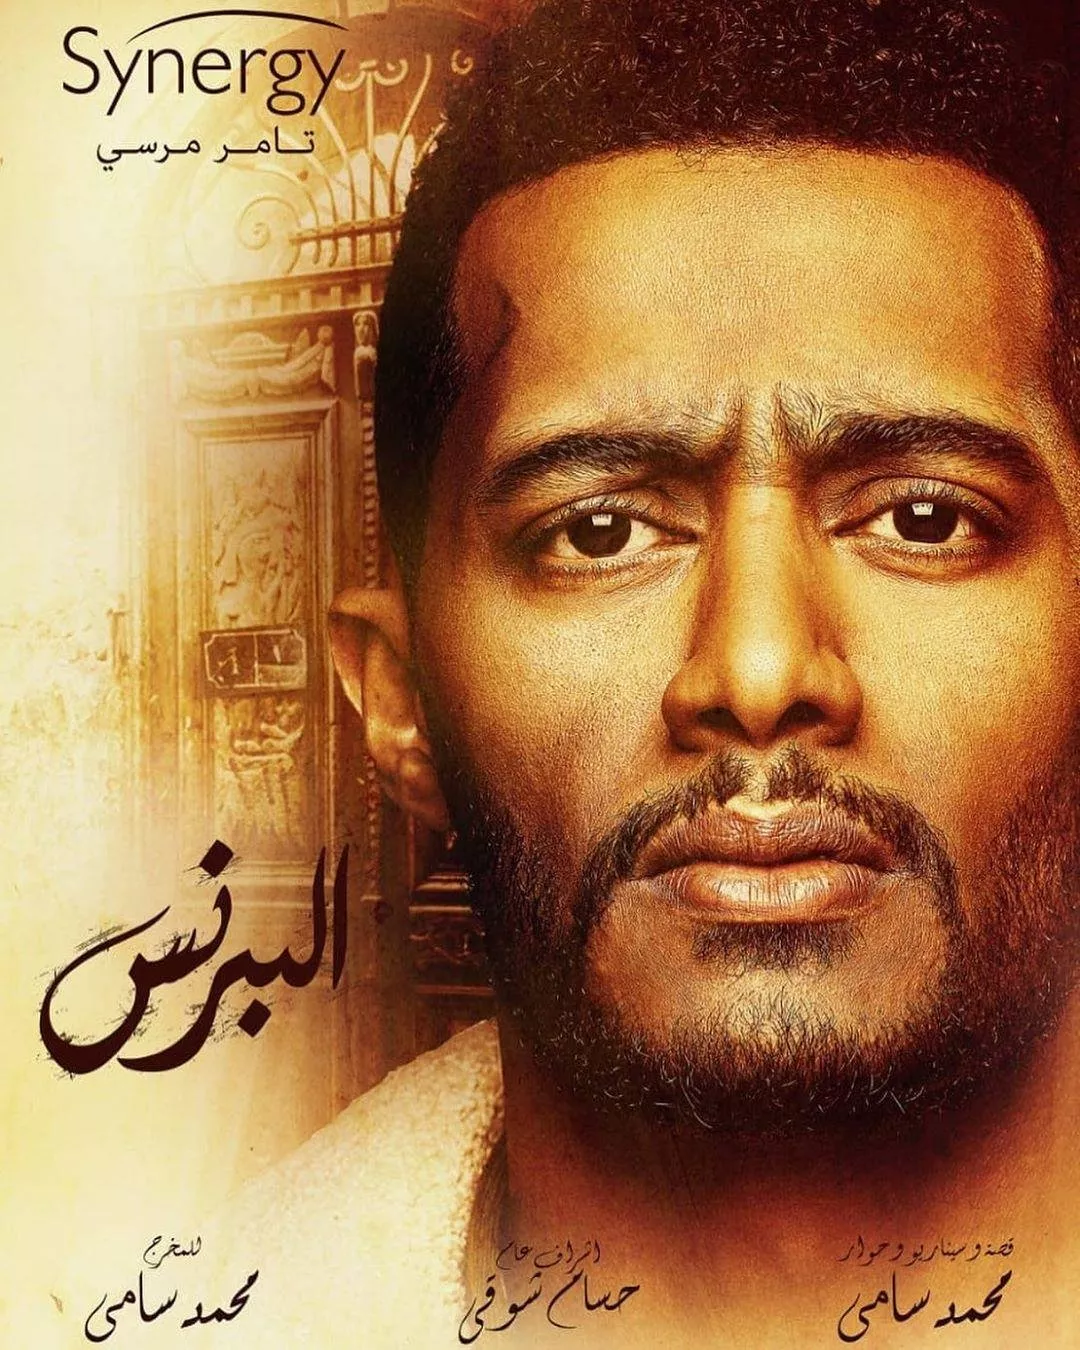 بوسترات مسلسلات رمضان 2020 التي تم الكشف عنها